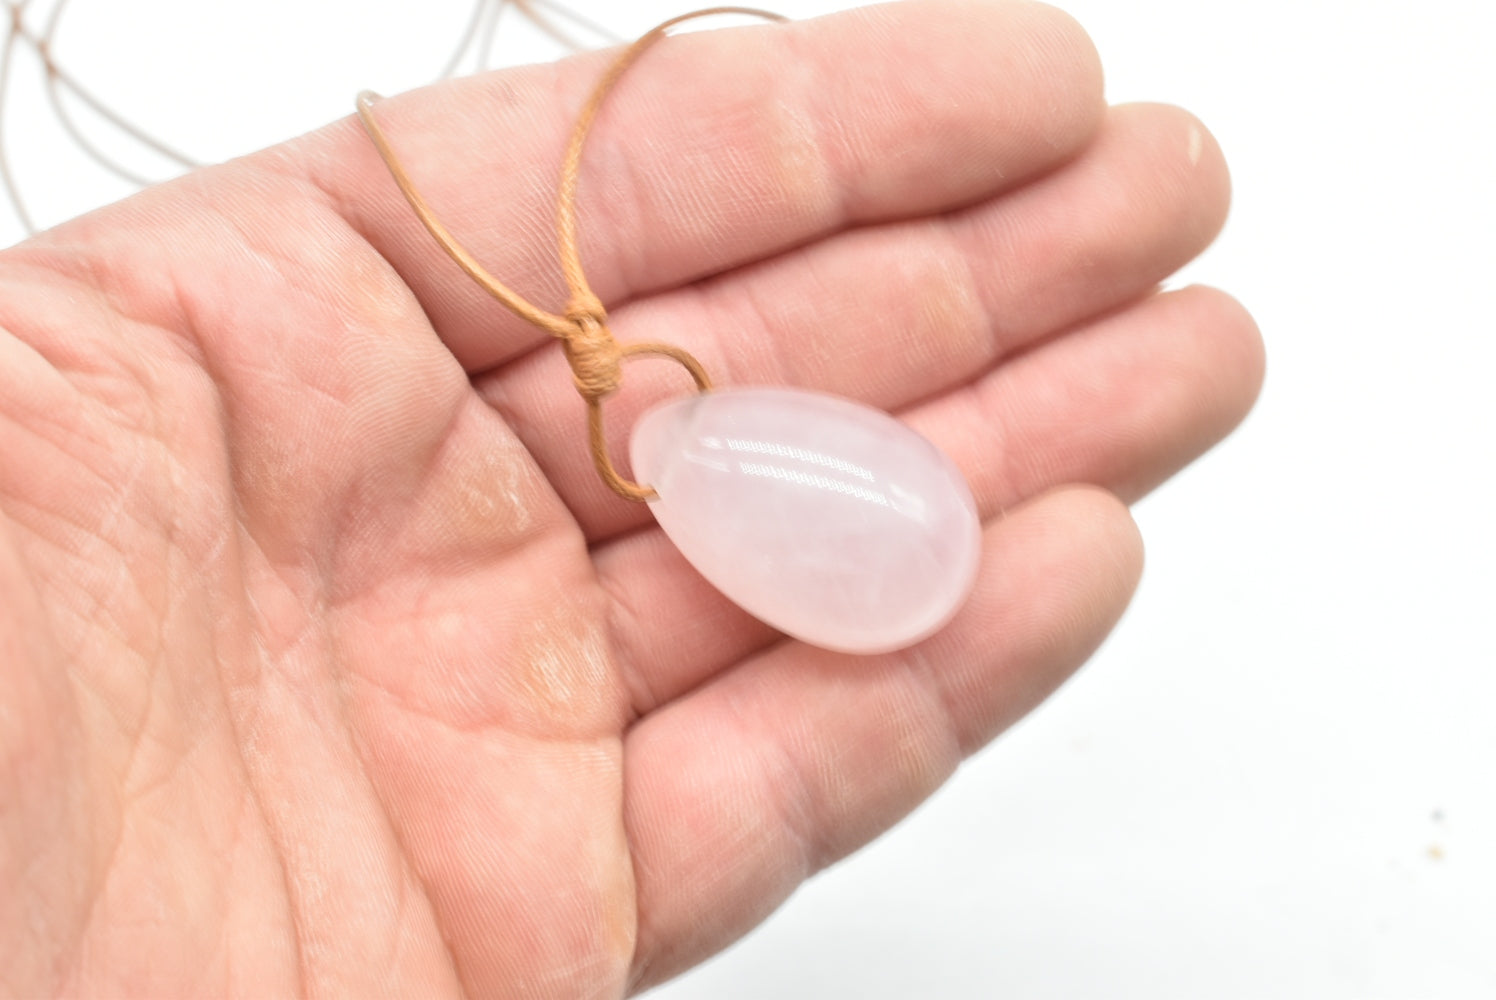 Rose quartz egg pendant